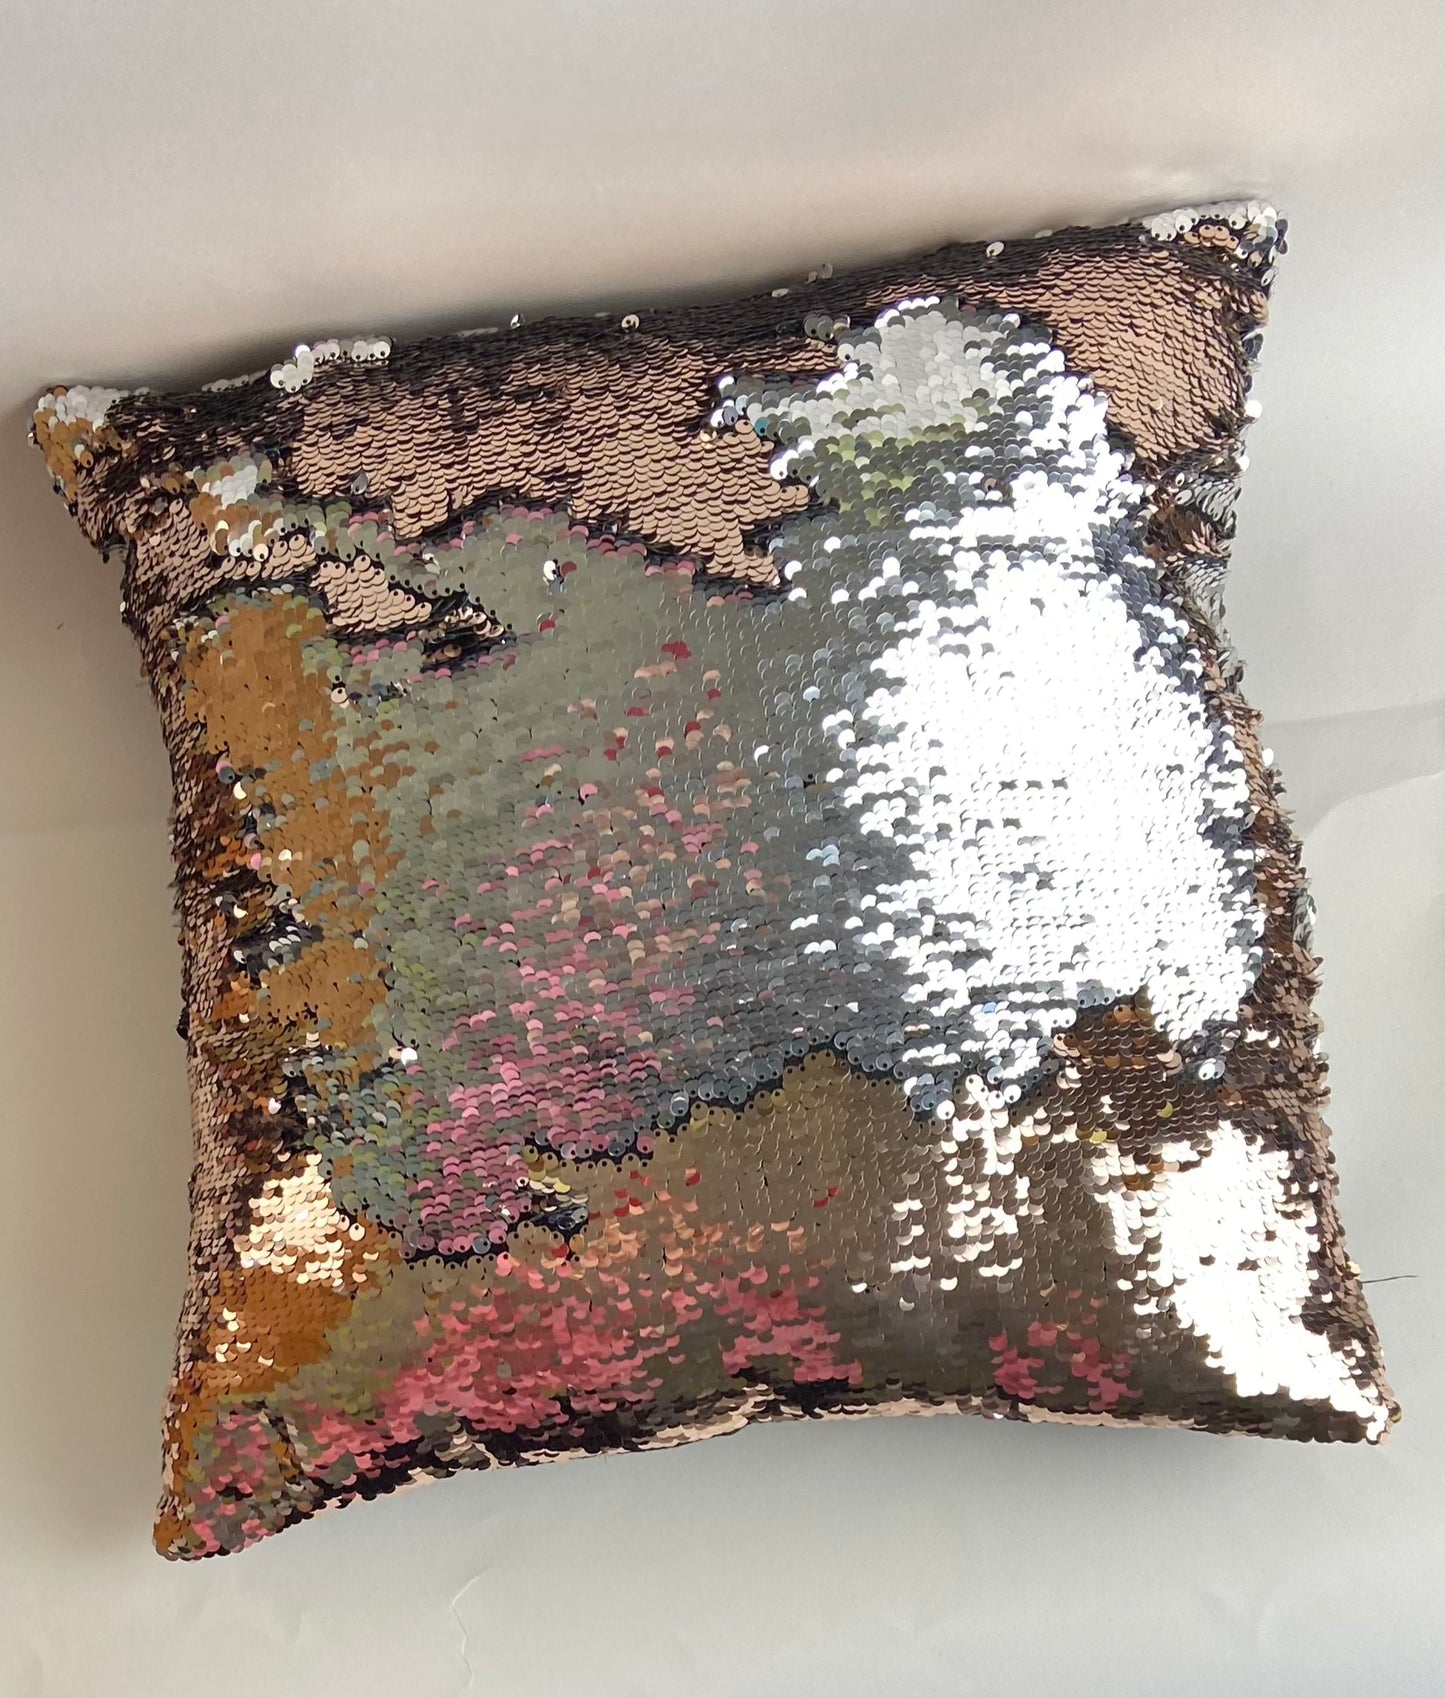 Sequin Cushion by CIMC Home